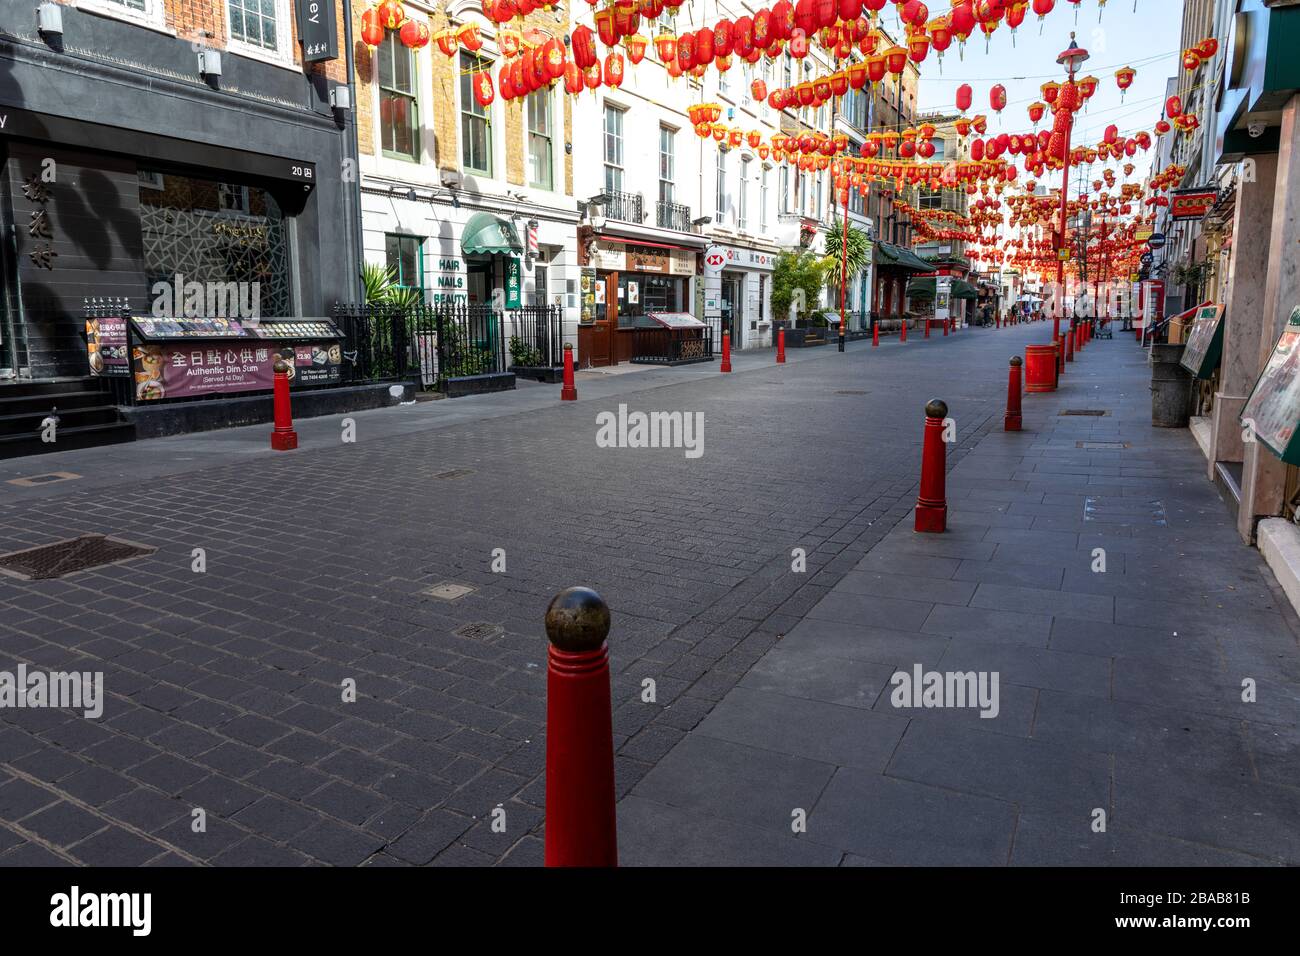 Londres - Angleterre - China Town - 21032020 - les rues vides alors que le virus Corona frappe Londres forçant de nombreuses entreprises à fermer ou à fournir un service réduit - Photographe : Brian Duffy Banque D'Images